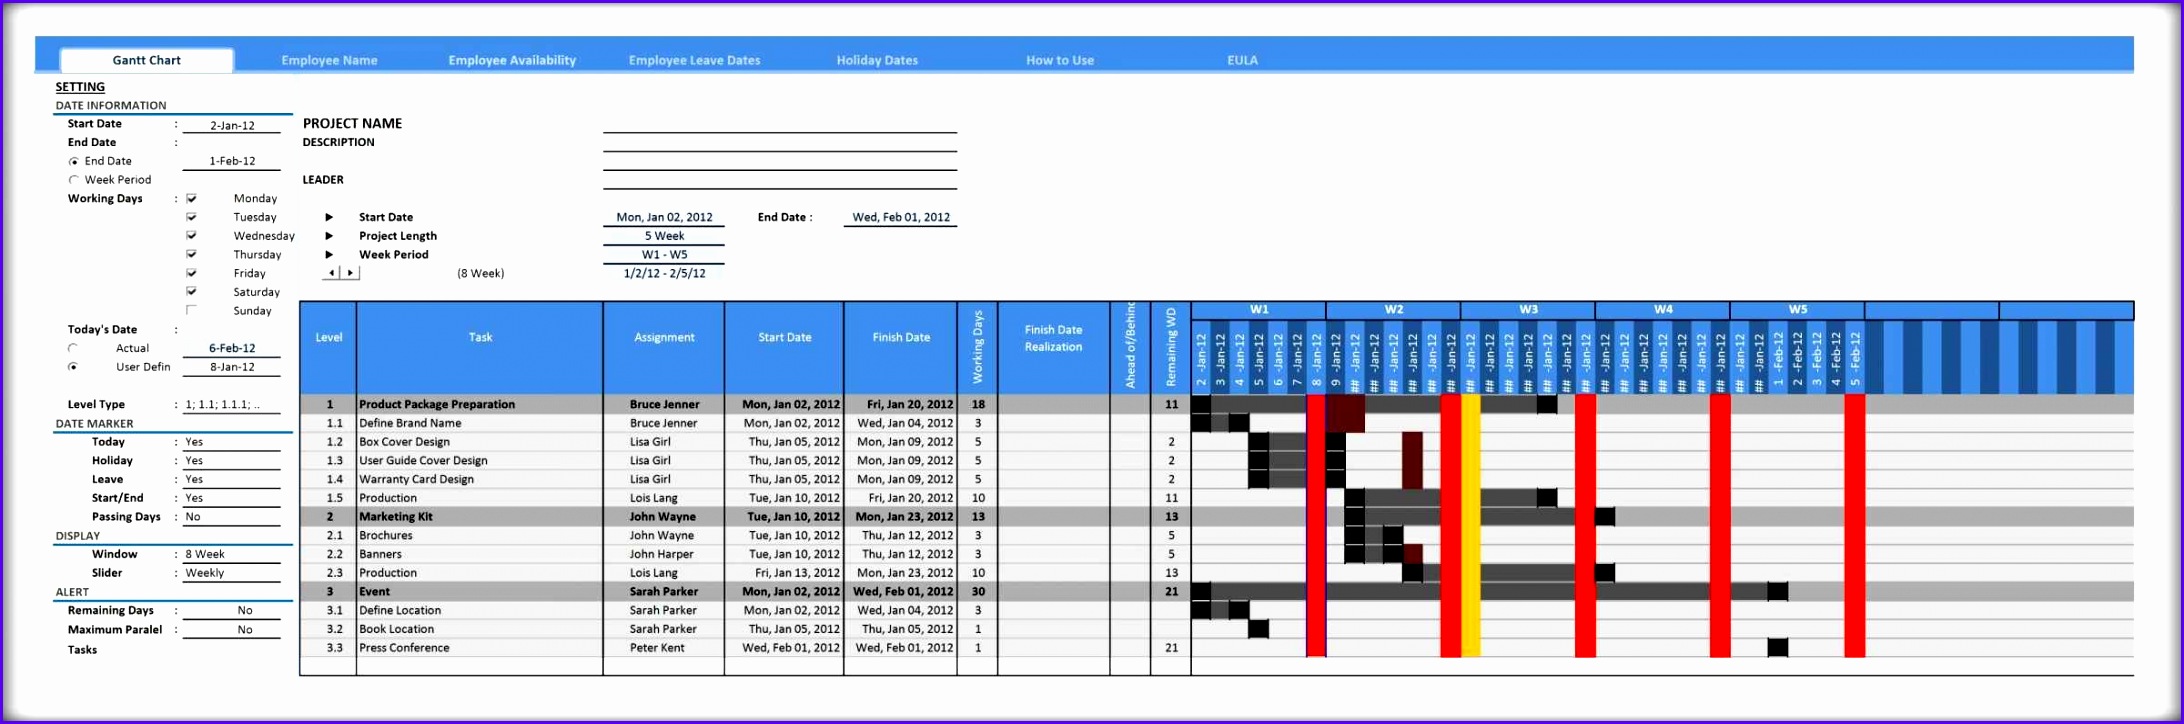 Full Size of Spreadsheet Templates gantt Chart Template For Excel Excelindo Size of Spreadsheet Templates gantt Chart Template For Excel Excelindo